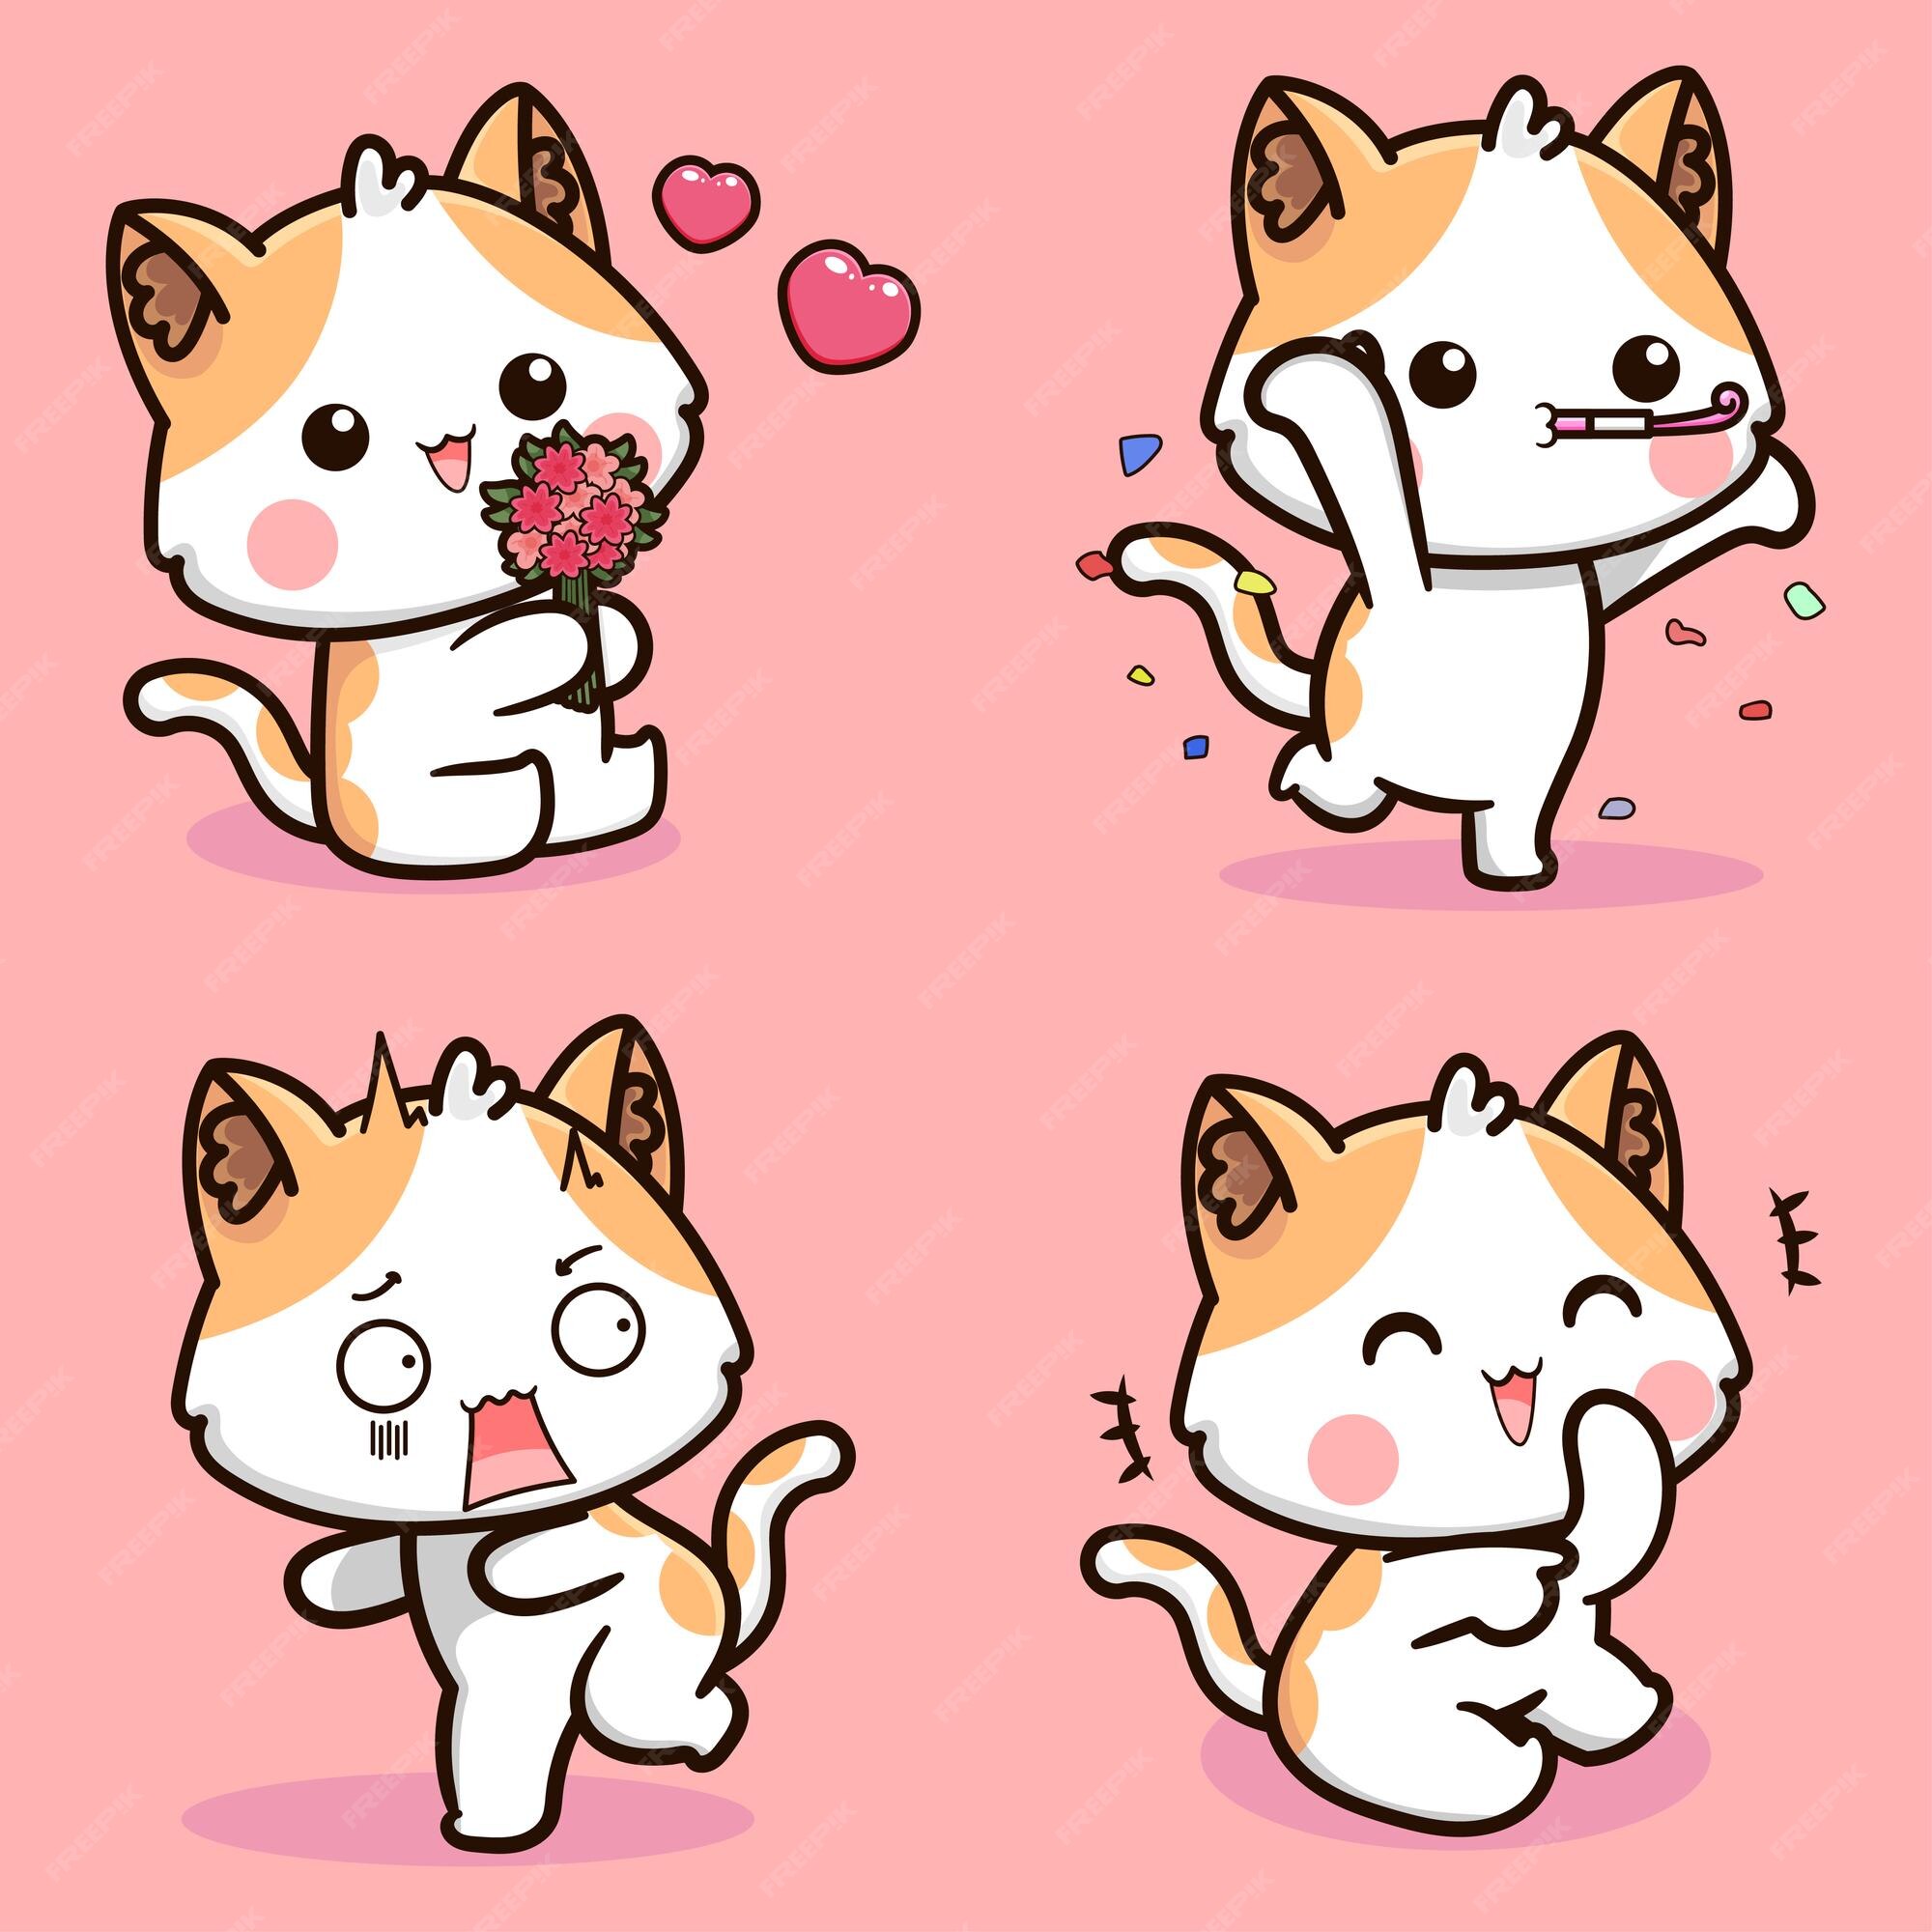 Gato de desenho animado com emoções e poses diferentes. comportamento do  gato, 30 linguagem corporal e expressões faciais. estilo bonito simples de  gatos. ilustração vetorial